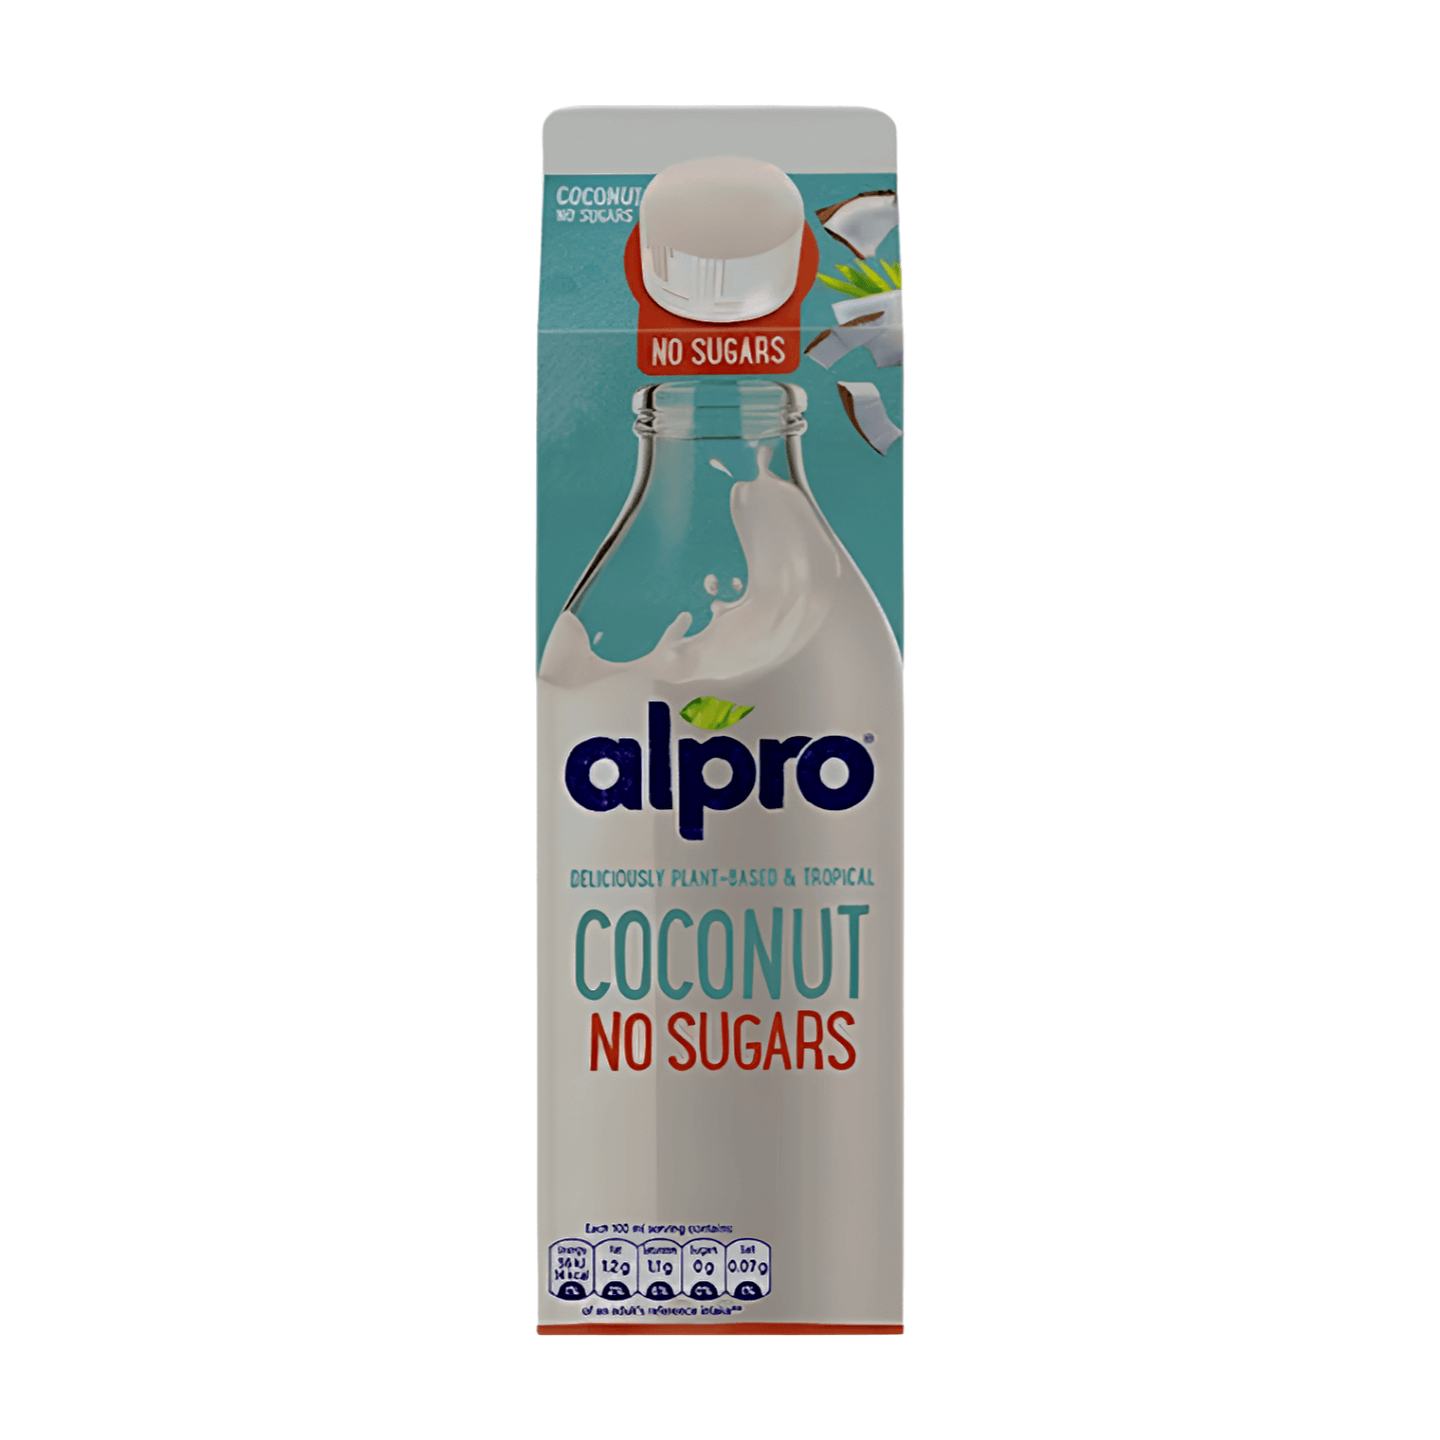 Alpro Coconut No Sugars Chilled